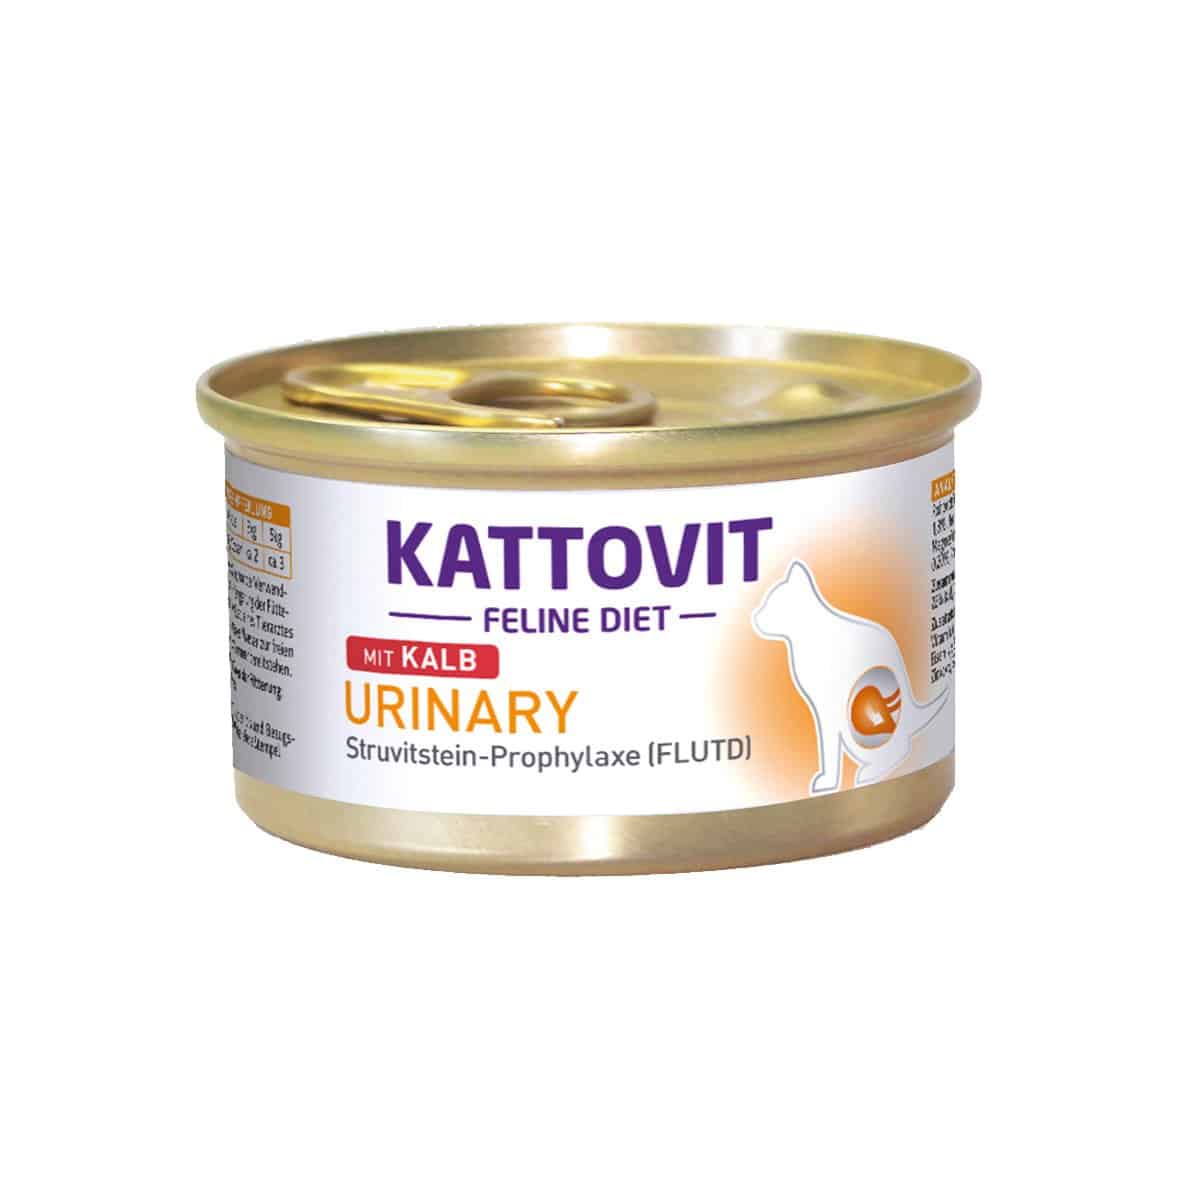 KATTOVIT Feline Diet Urinary Kalb 12x85g